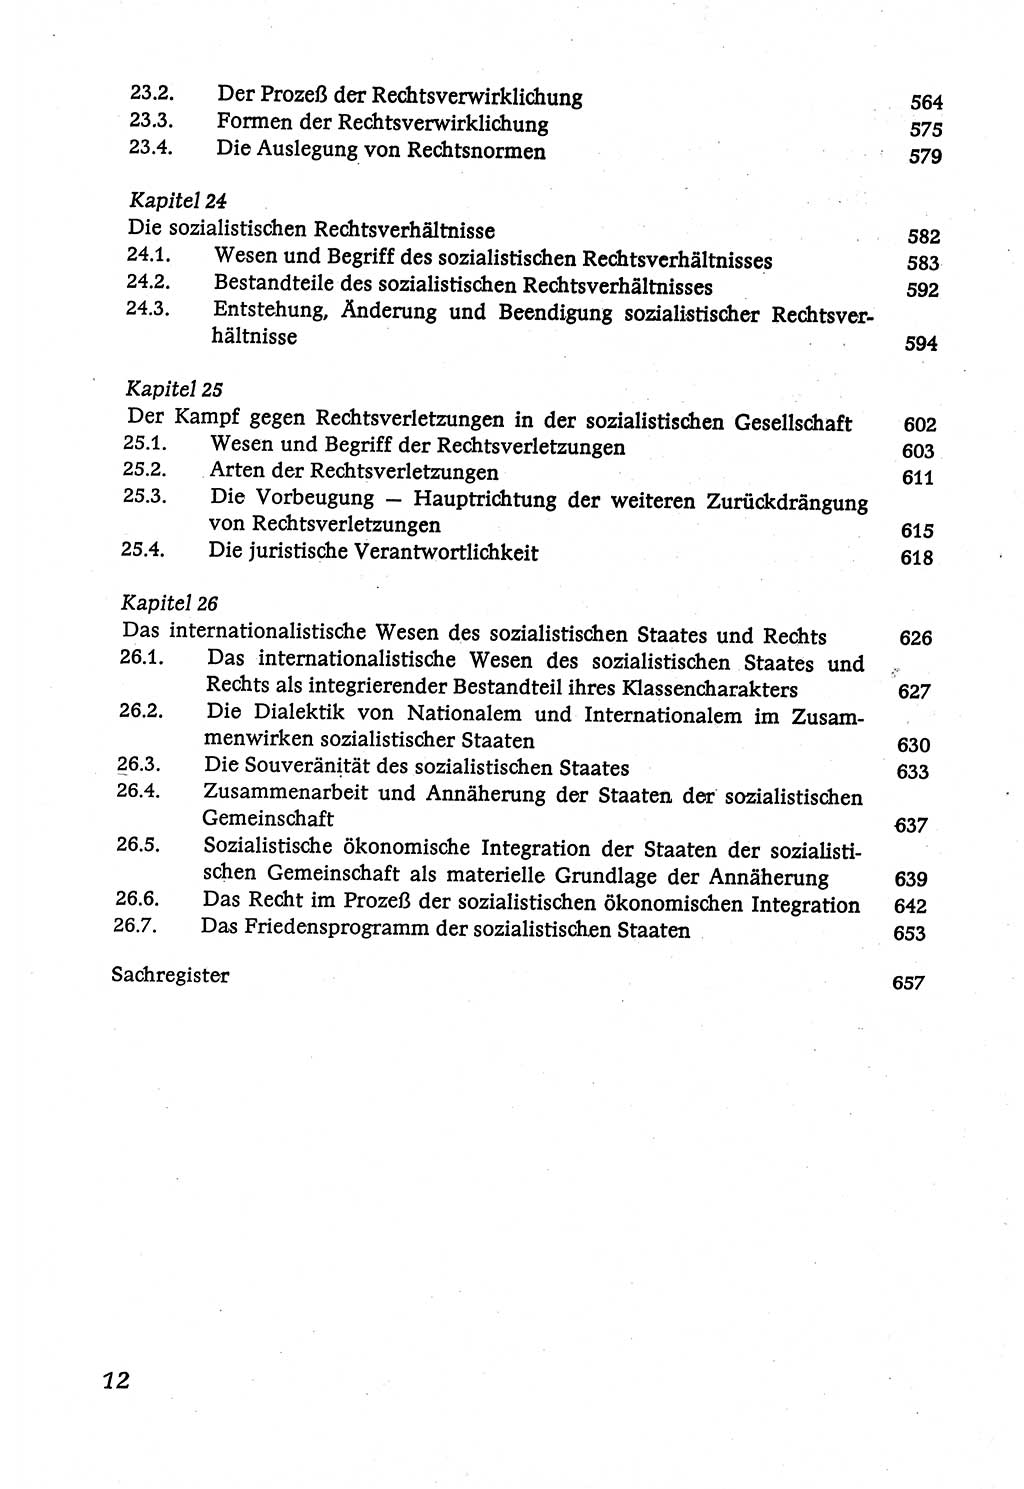 Marxistisch-leninistische (ML) Staats- und Rechtstheorie [Deutsche Demokratische Republik (DDR)], Lehrbuch 1980, Seite 12 (ML St.-R.-Th. DDR Lb. 1980, S. 12)